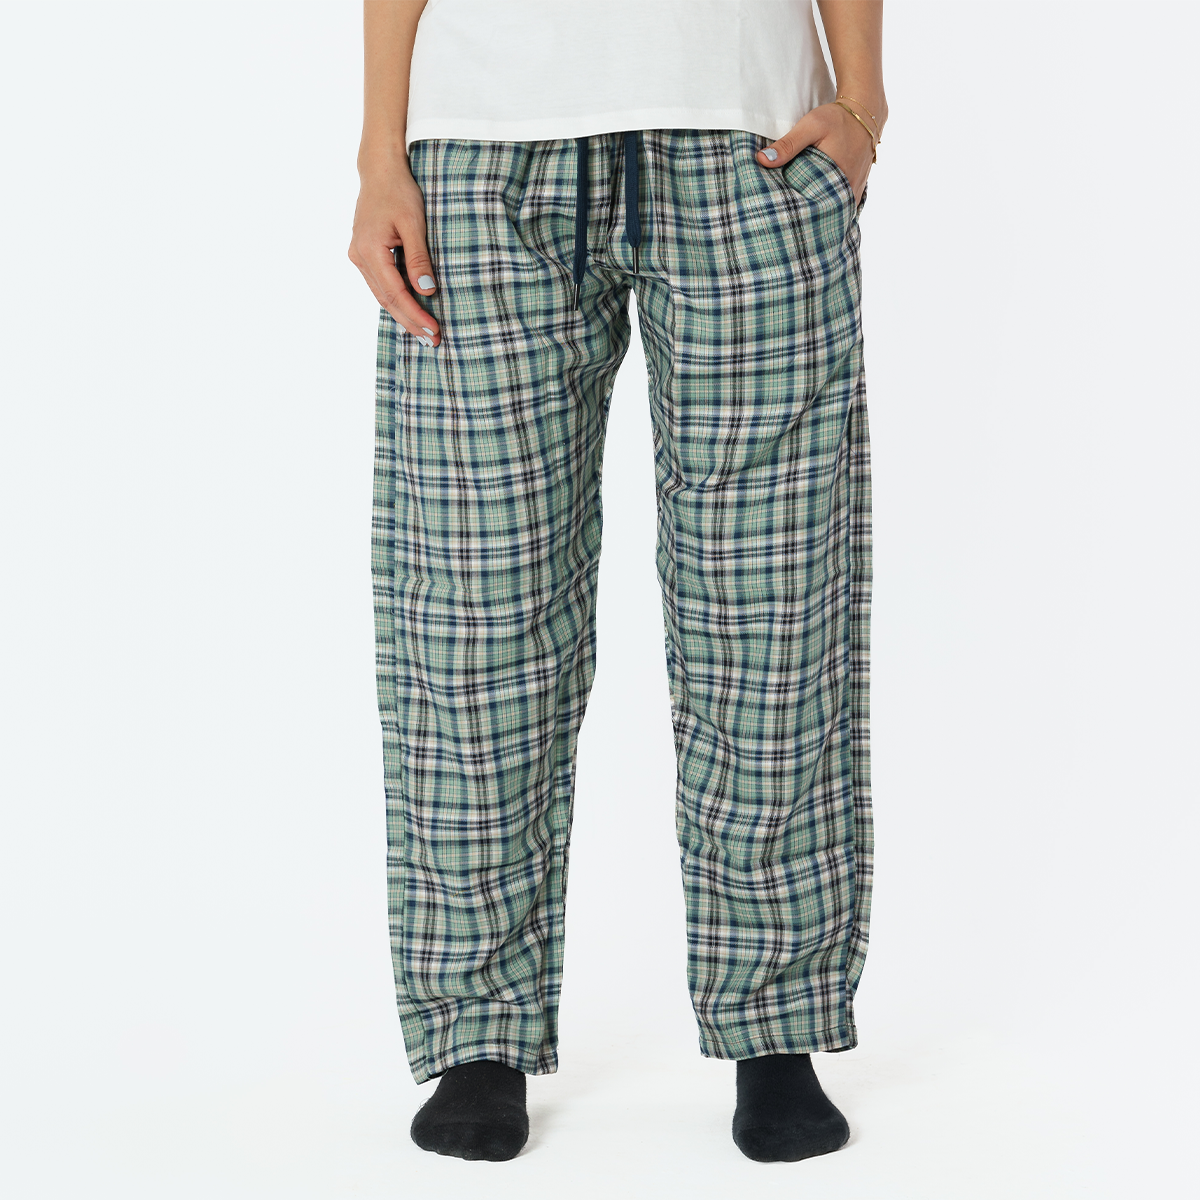 Pistage Plaid Pyjama Pants set